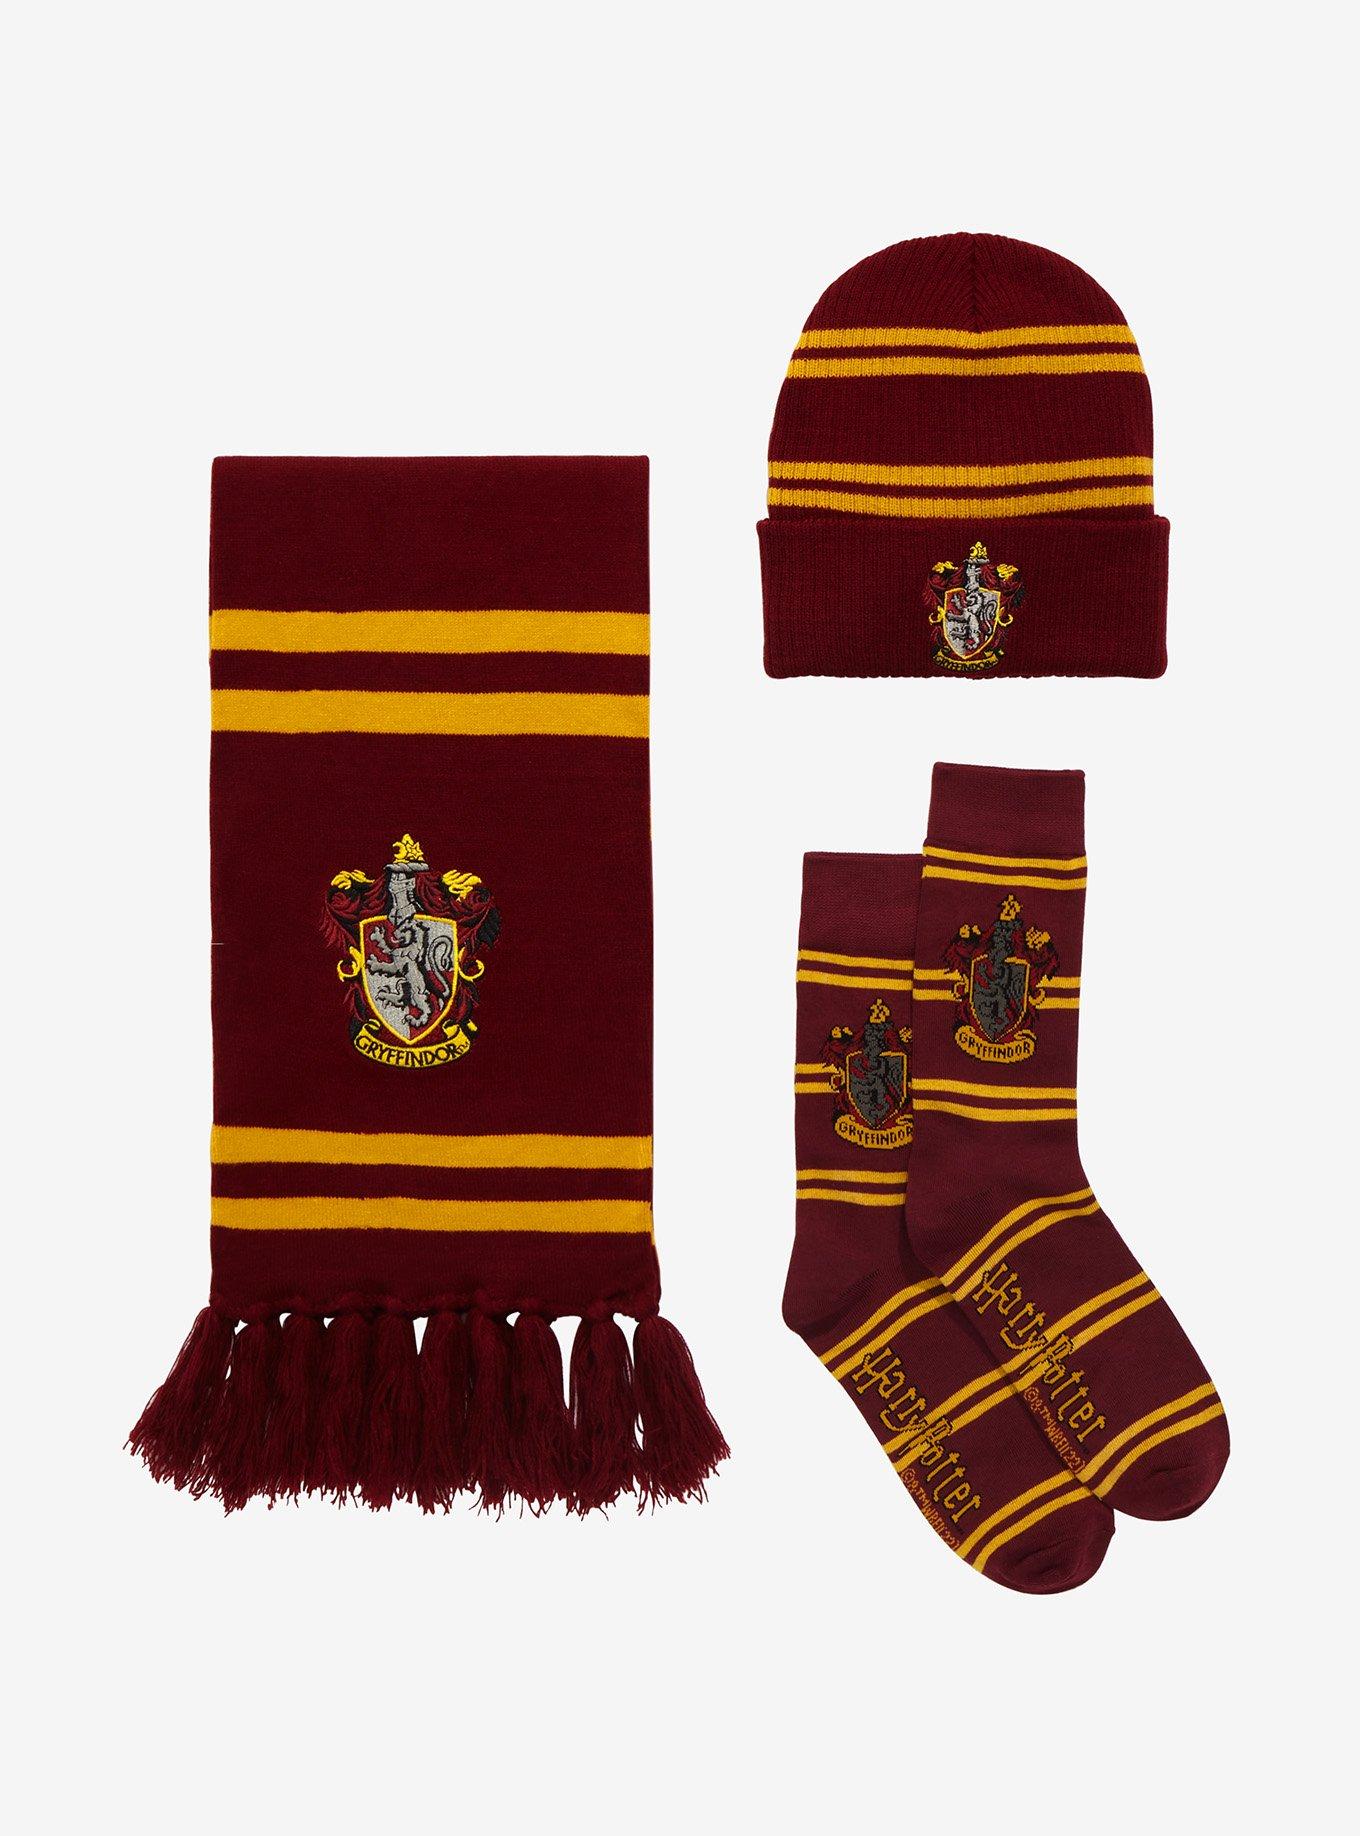 Harry Potter Hogwarts Houses Knit Scarf & Pom Beanie Set  Harry potter  scarf, Harry potter gryffindor scarf, Gryffindor scarf